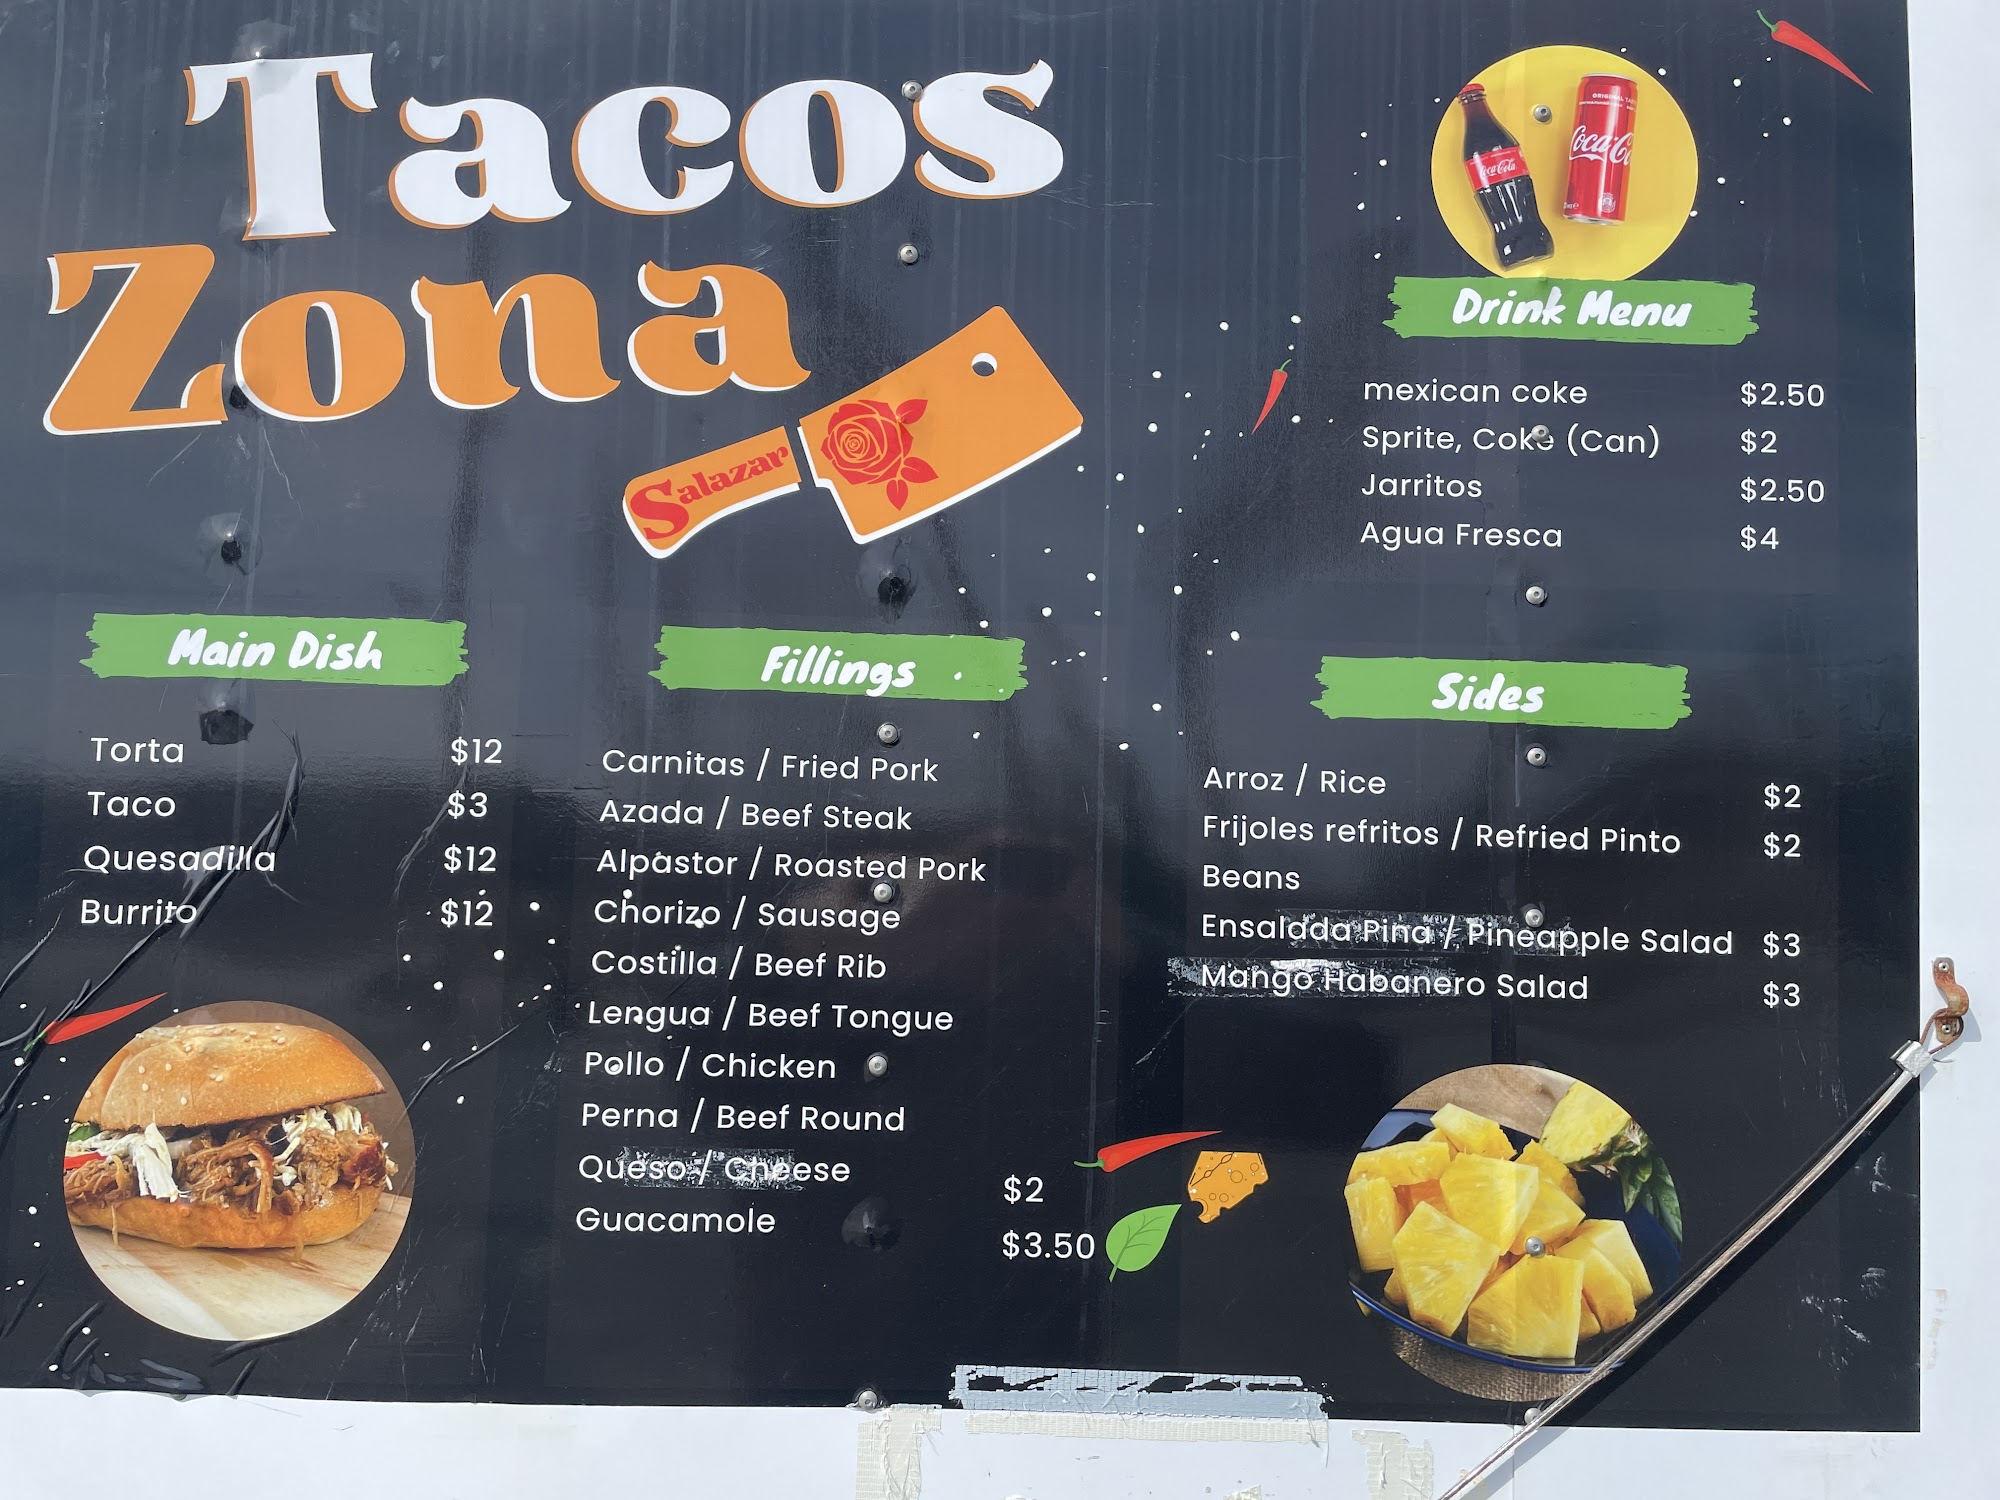 Tacos Zona